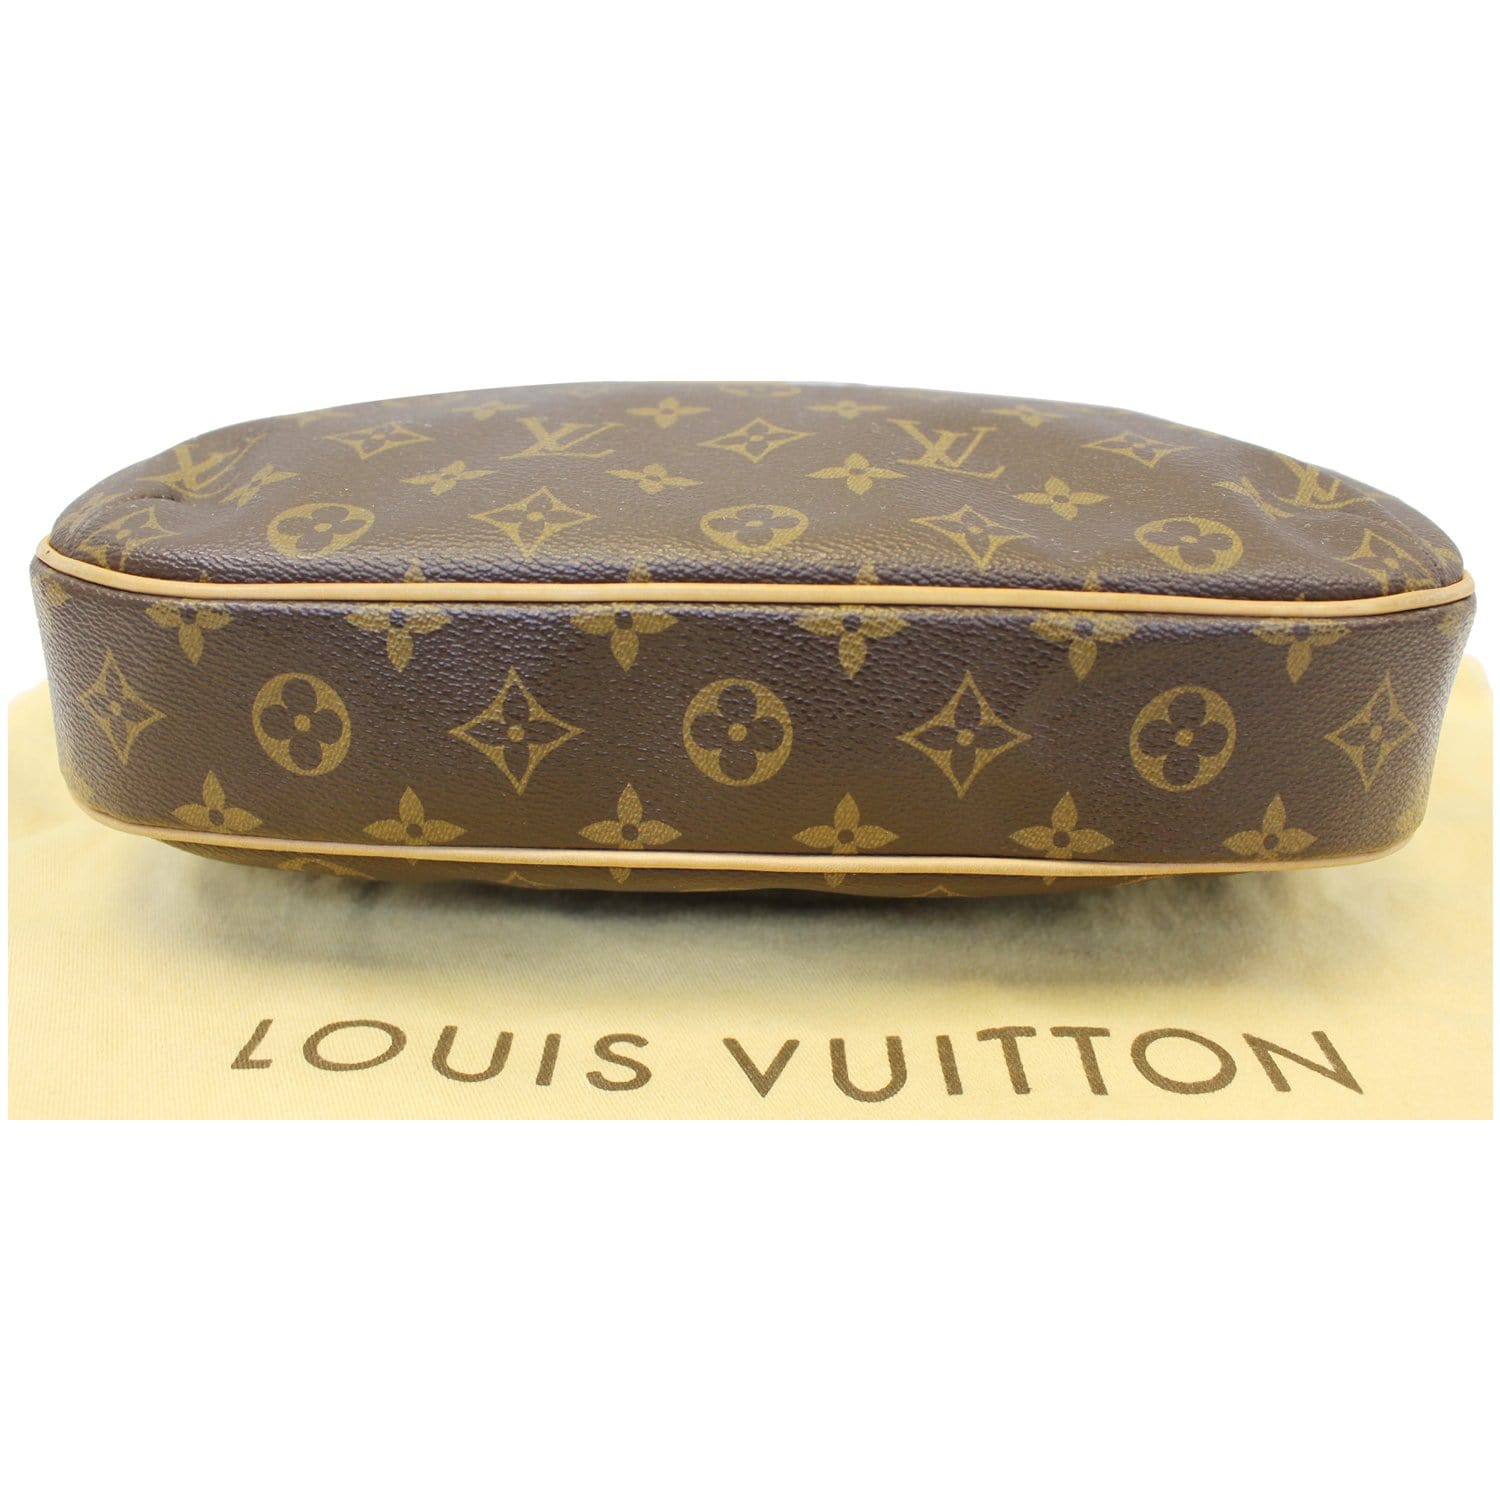 Shop Louis Vuitton Odéon Mm (ODEON MM BAG, M45352) by Mikrie